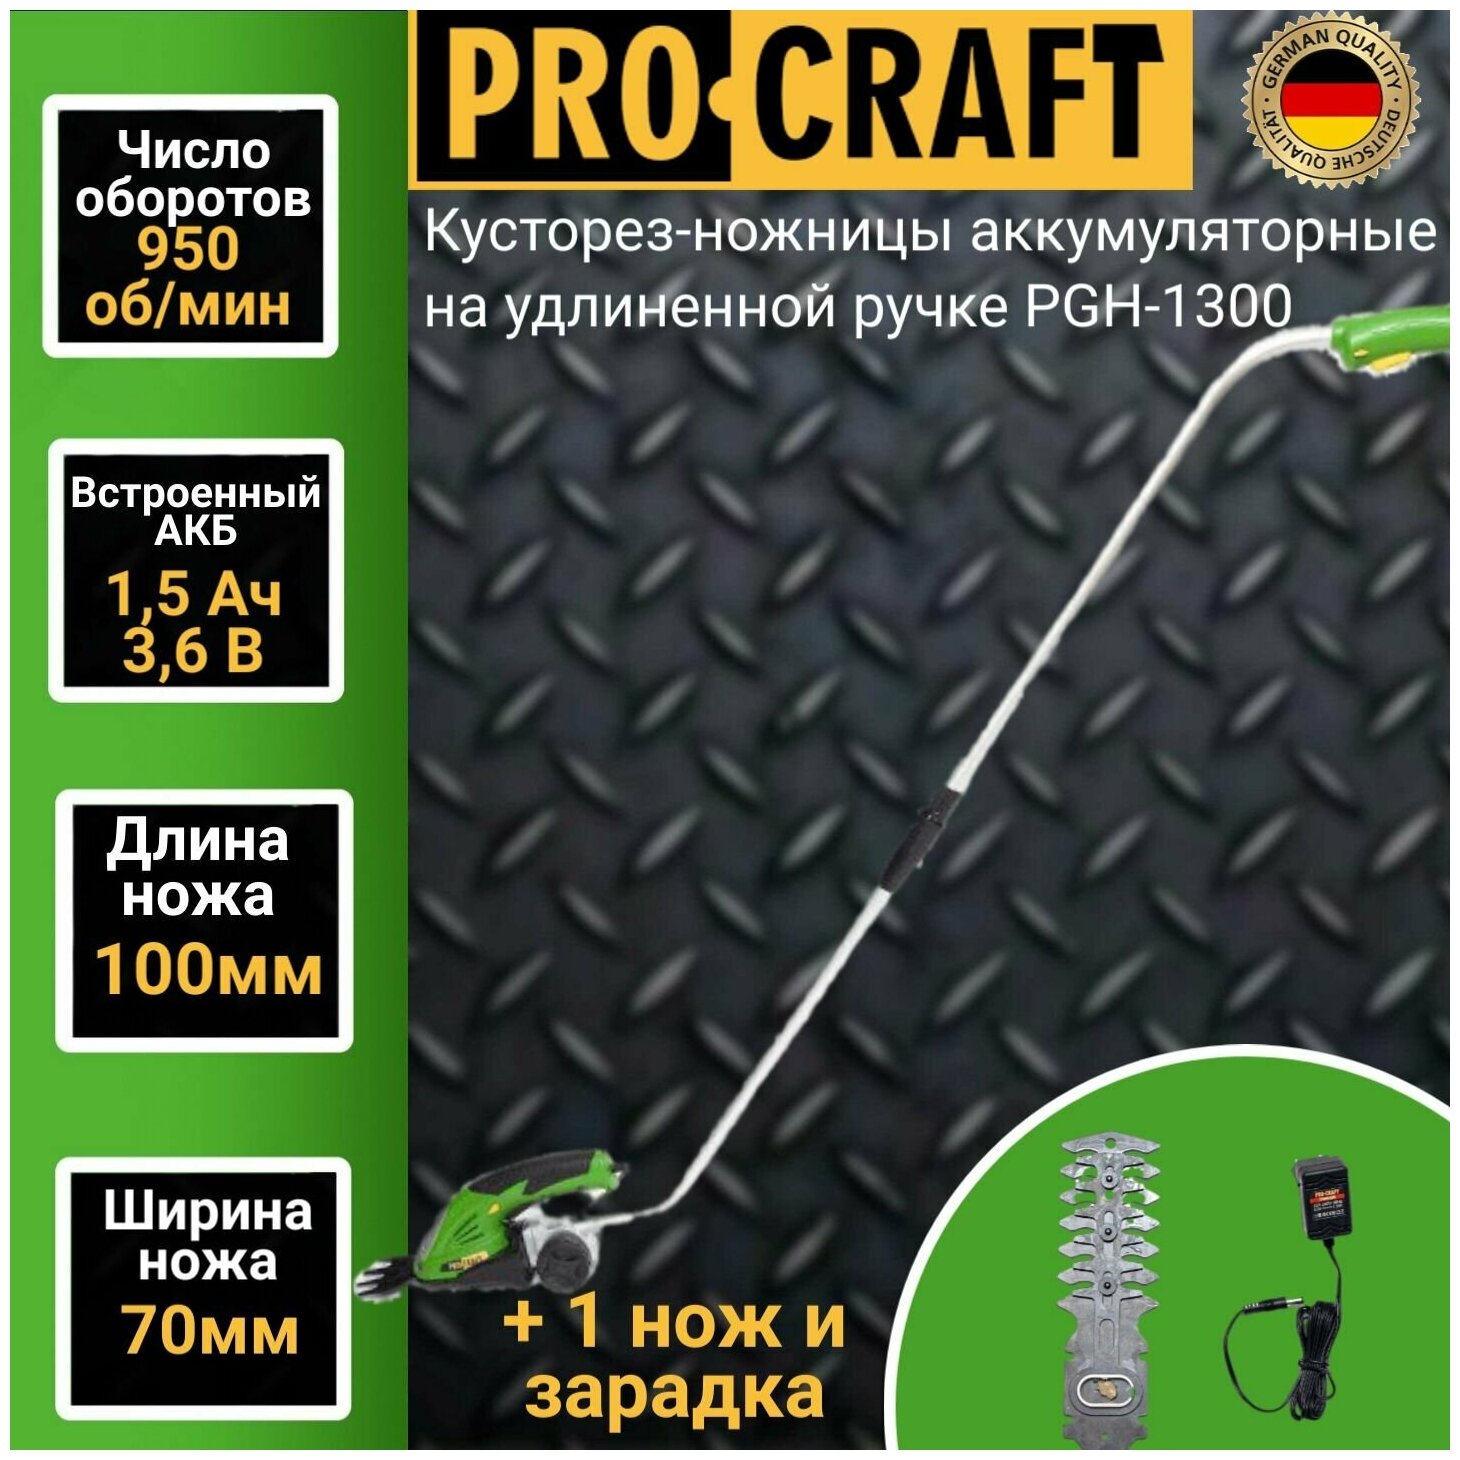 Кусторез-ножницы аккумуляторные ProСraft PGH-1300 с удлиненной ручкой 1100 об/мин, длинна реза 120, ширина реза 83мм